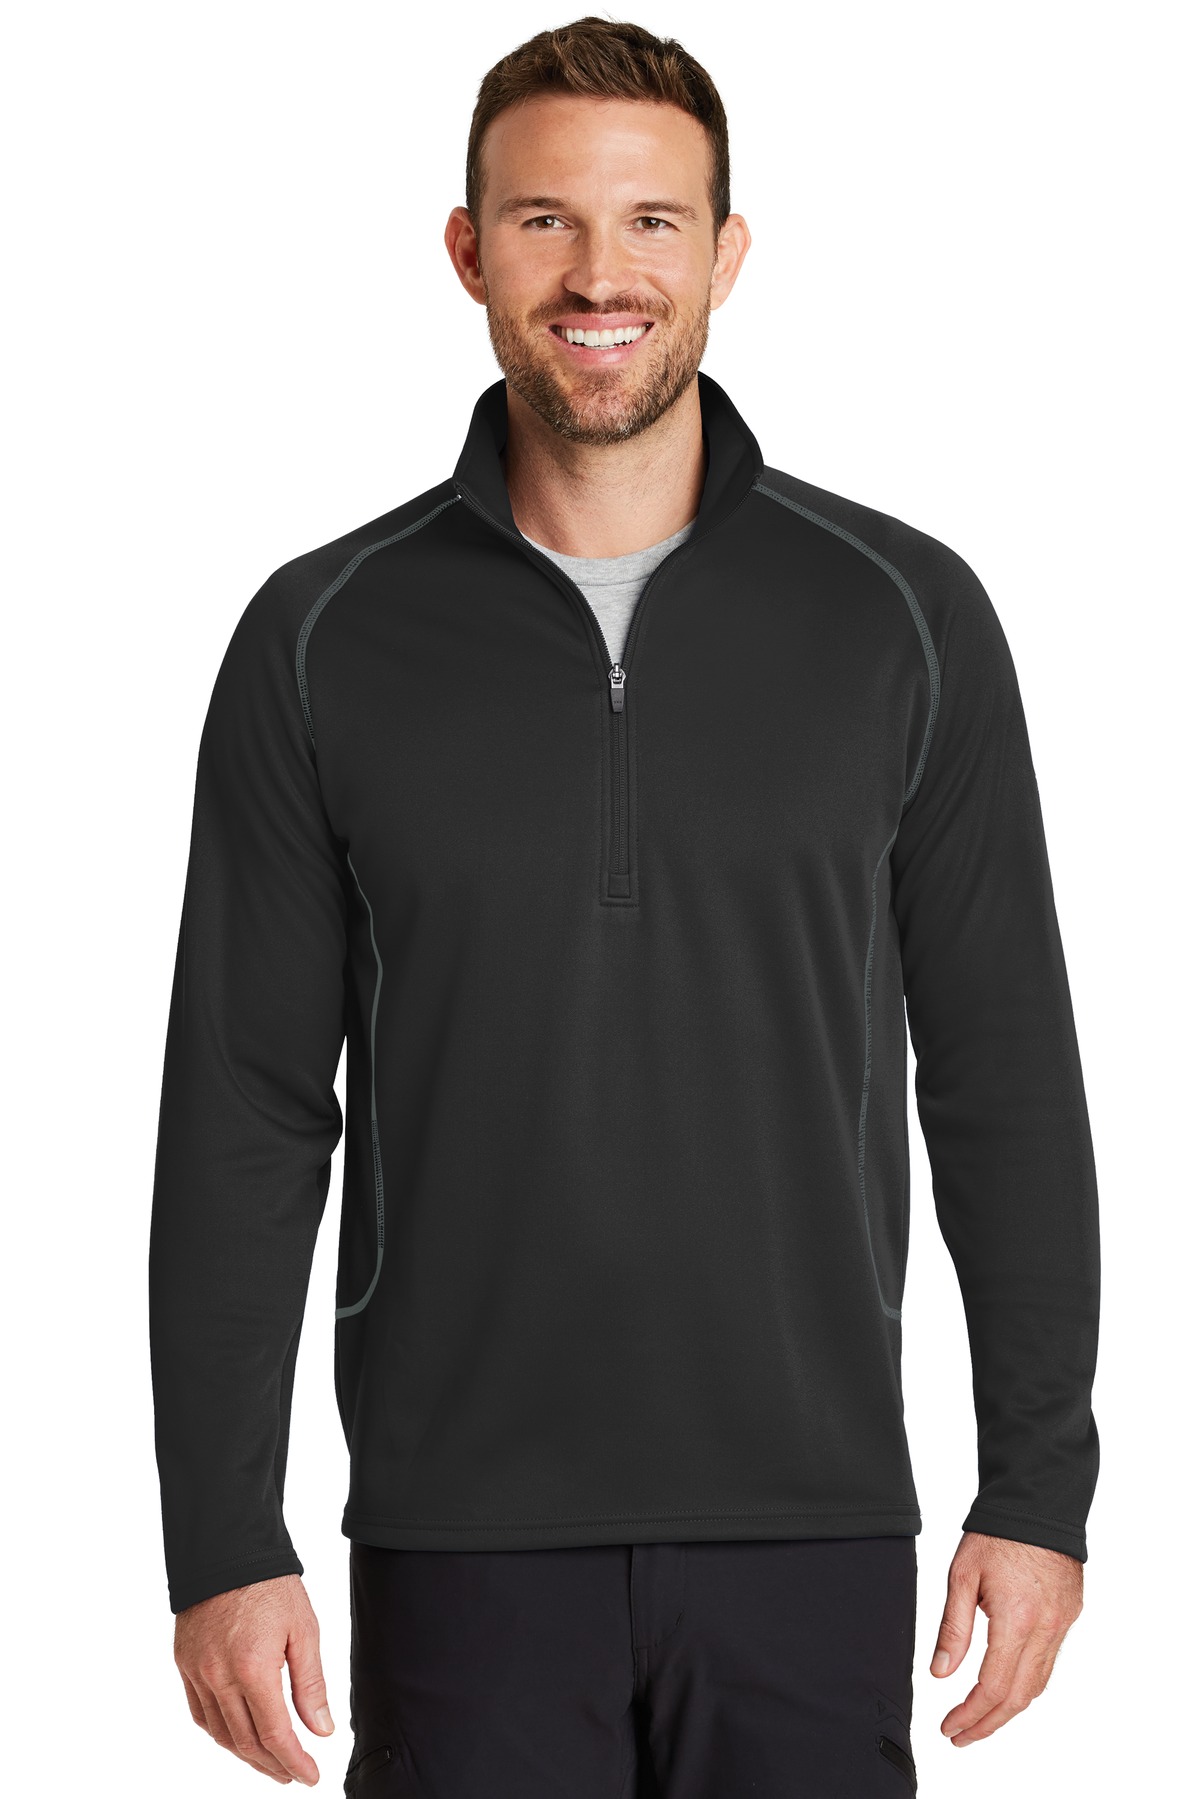 Eddie Bauer Hospitality Activewear,Outerwear,Sweatshirts&Fleece ® Smooth Fleece Base Layer 1/2-Zip.-Eddie Bauer